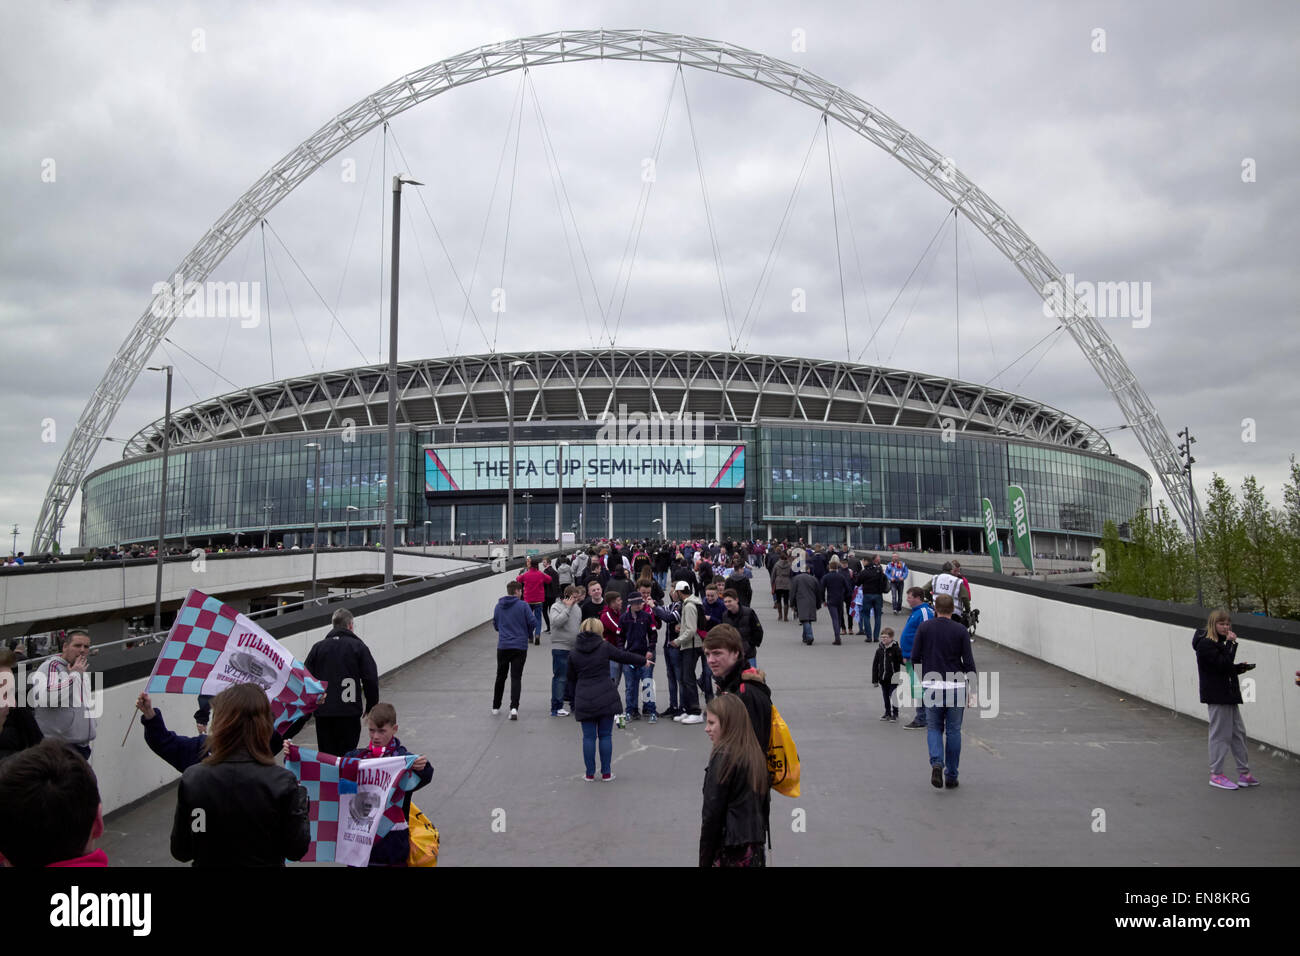 Aston Villa approche des fans au stade de Wembley sur fa cup semi finale day London UK Banque D'Images